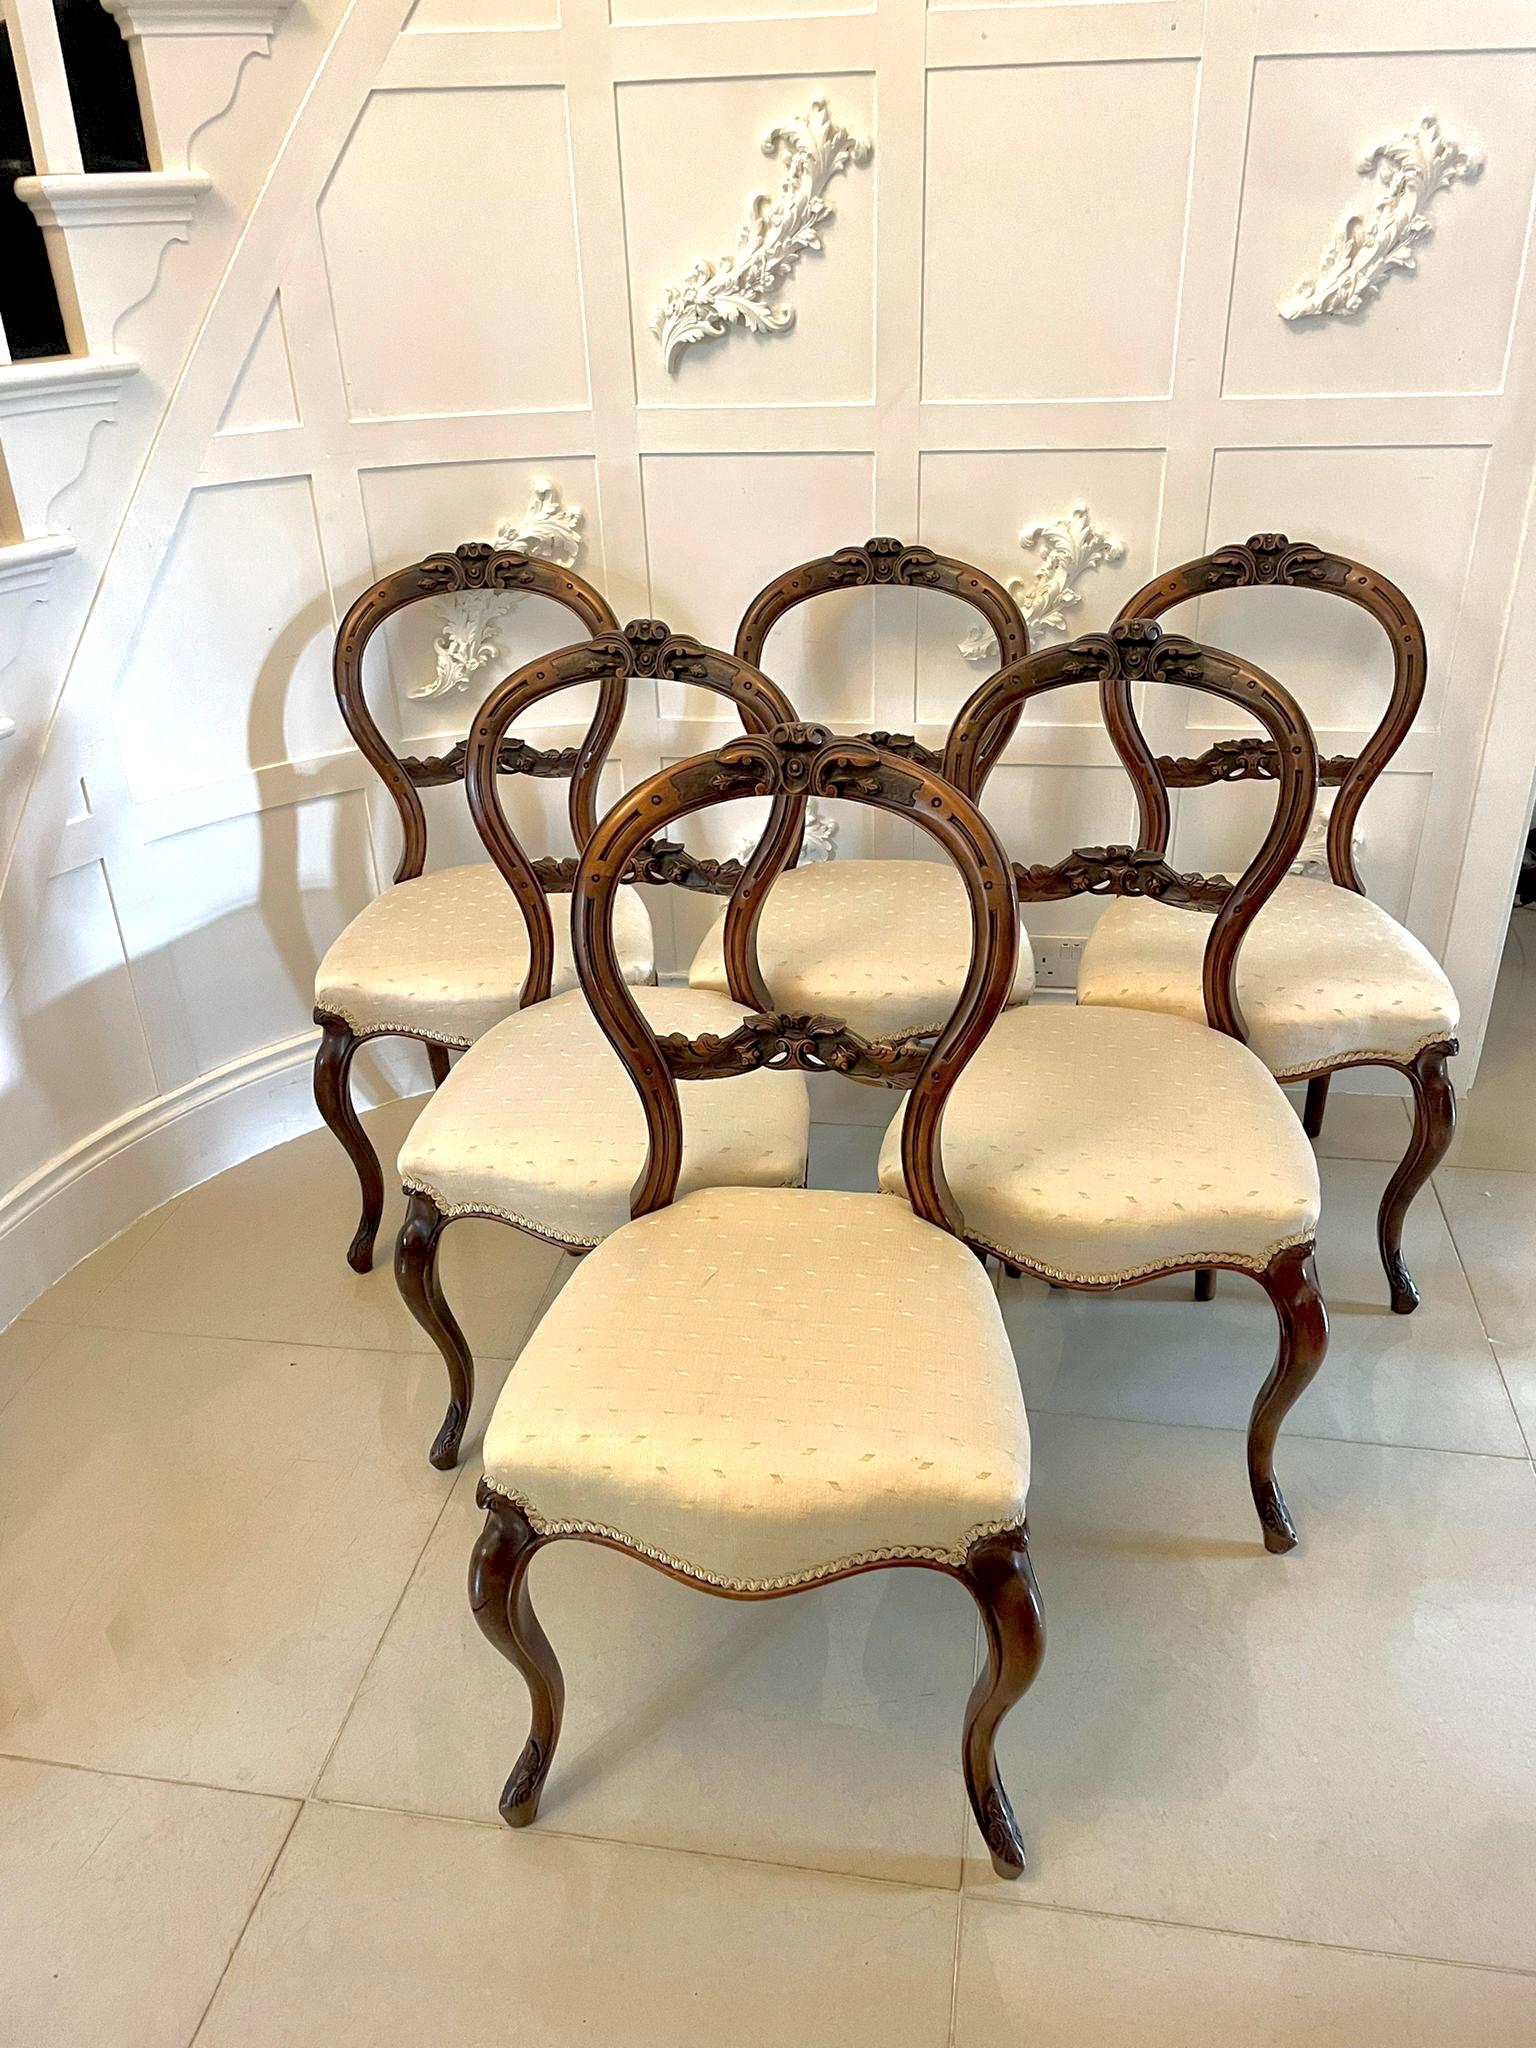 Ensemble de 6 chaises de salle à manger en noyer sculpté de style victorien ancien, avec dossier en noyer sculpté de qualité, sièges en forme de serpentin récemment rembourrés dans un tissu de qualité, reposant sur d'élégants pieds cabriole sculptés